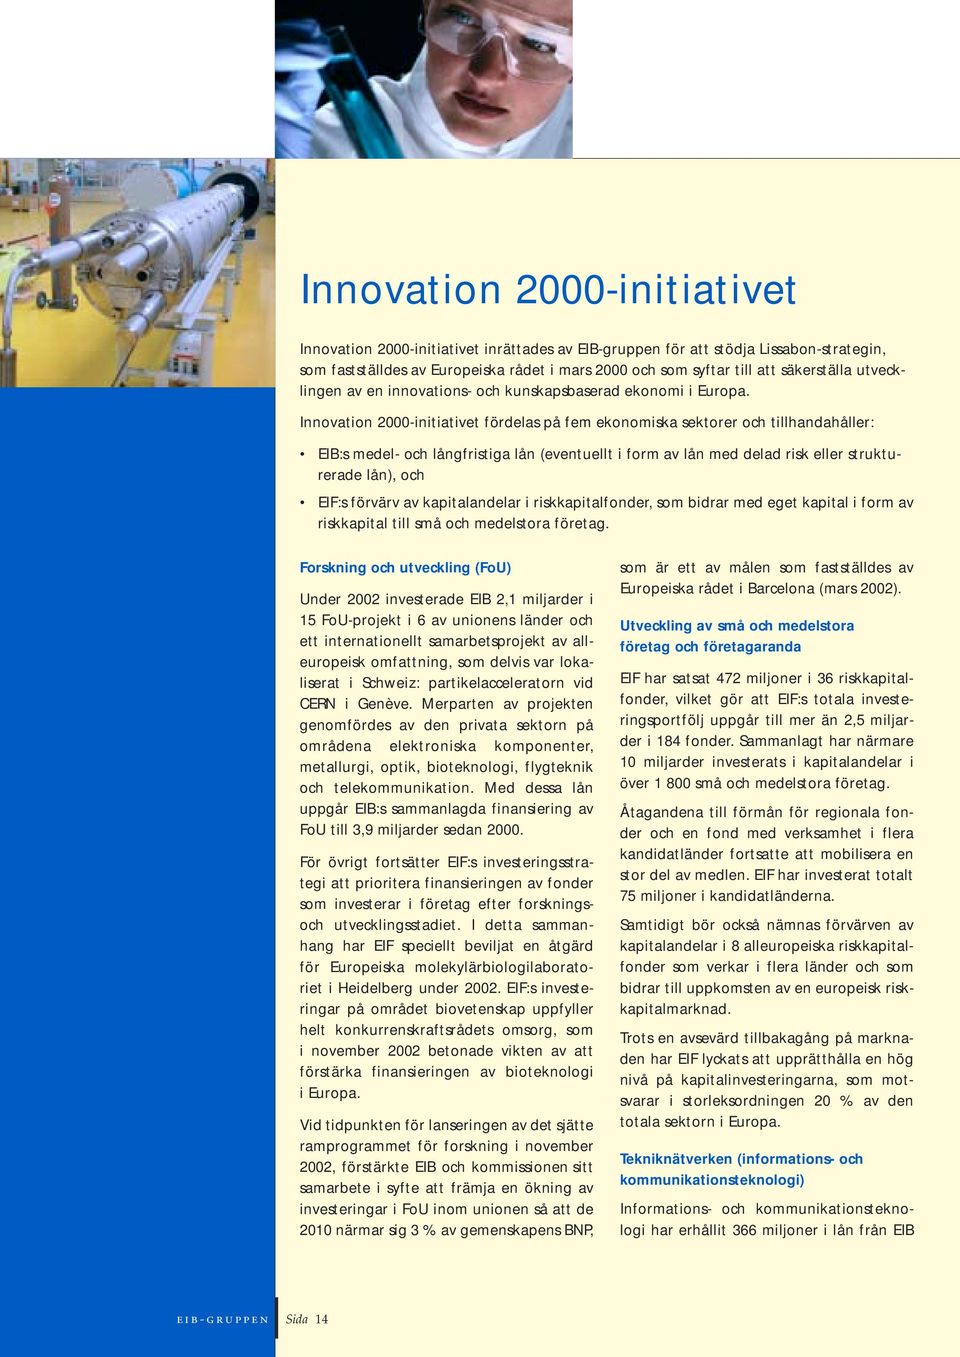 Innovation 2000-initiativet fördelas på fem ekonomiska sektorer och tillhandahåller: EIB:s medel- och långfristiga lån (eventuellt i form av lån med delad risk eller strukturerade lån), och EIF:s